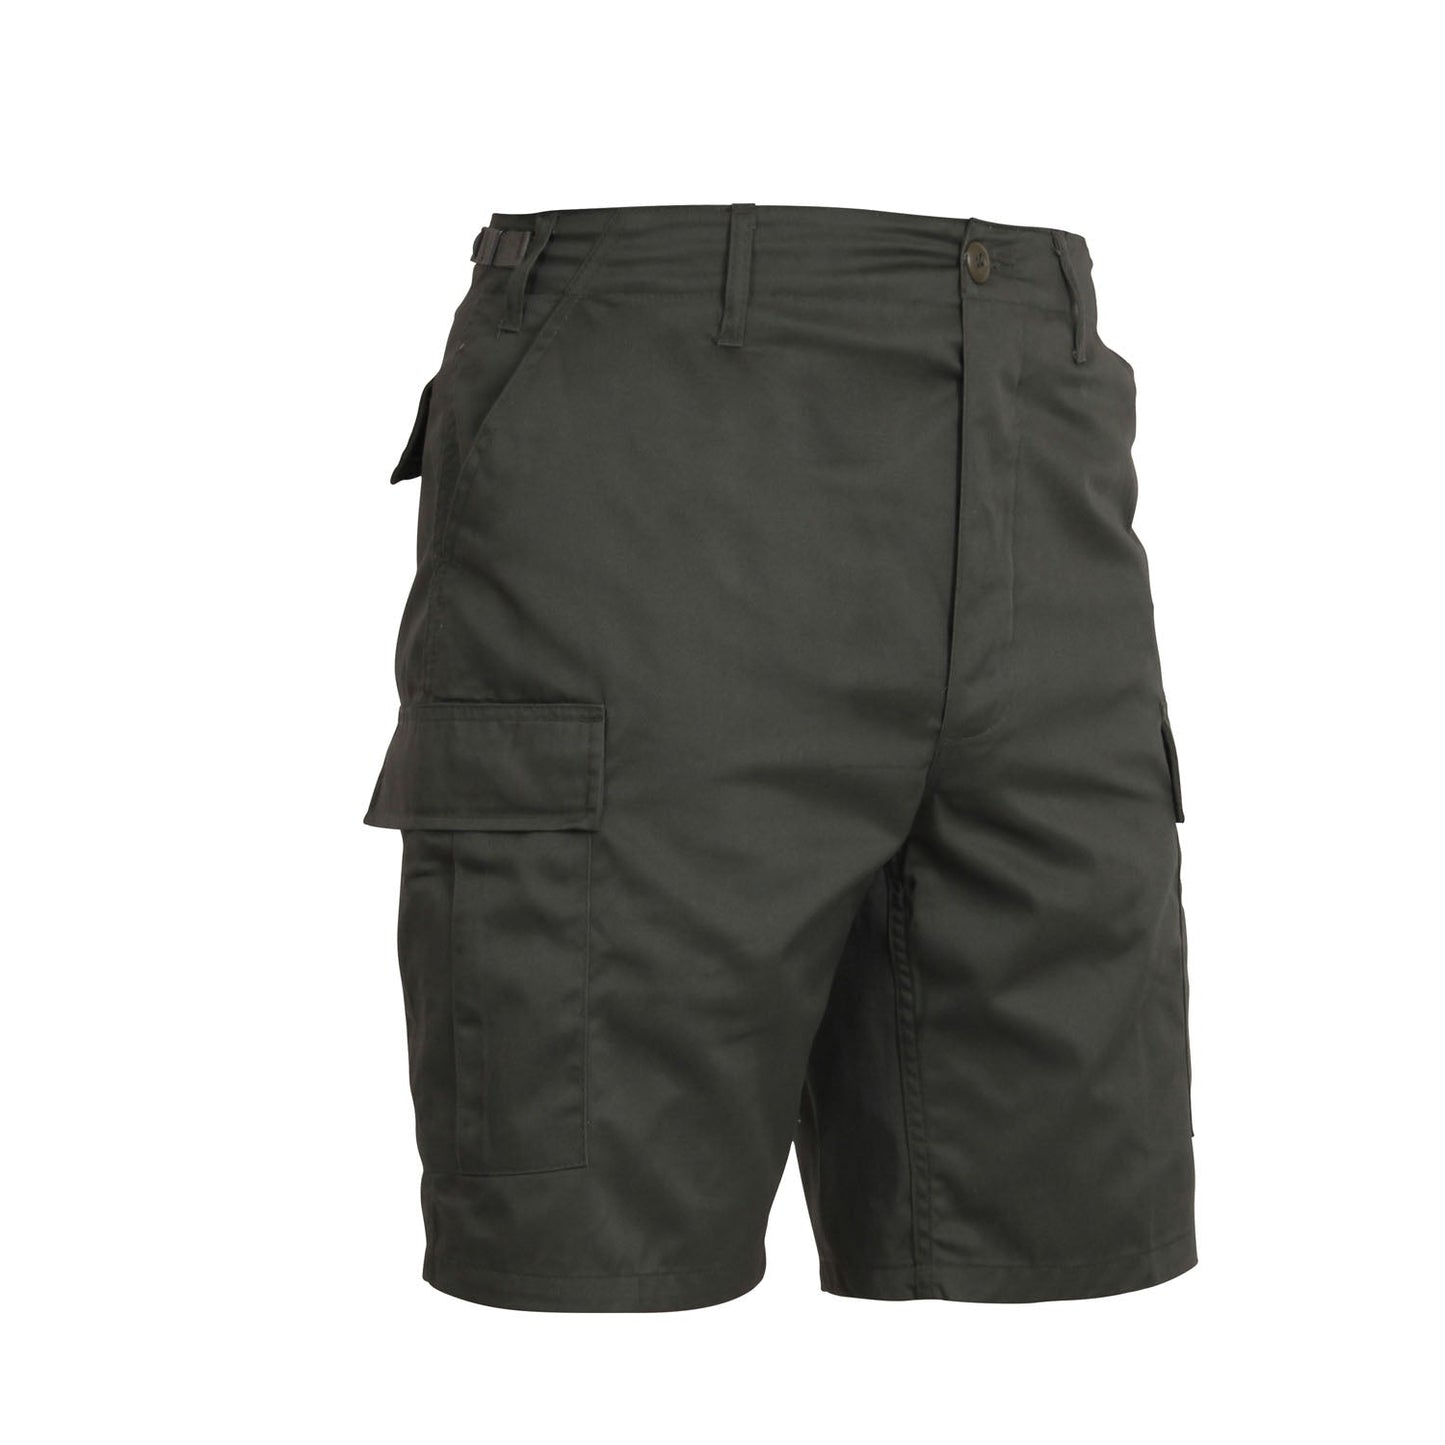 Rothco Tactical BDU Shorts Olive Drab